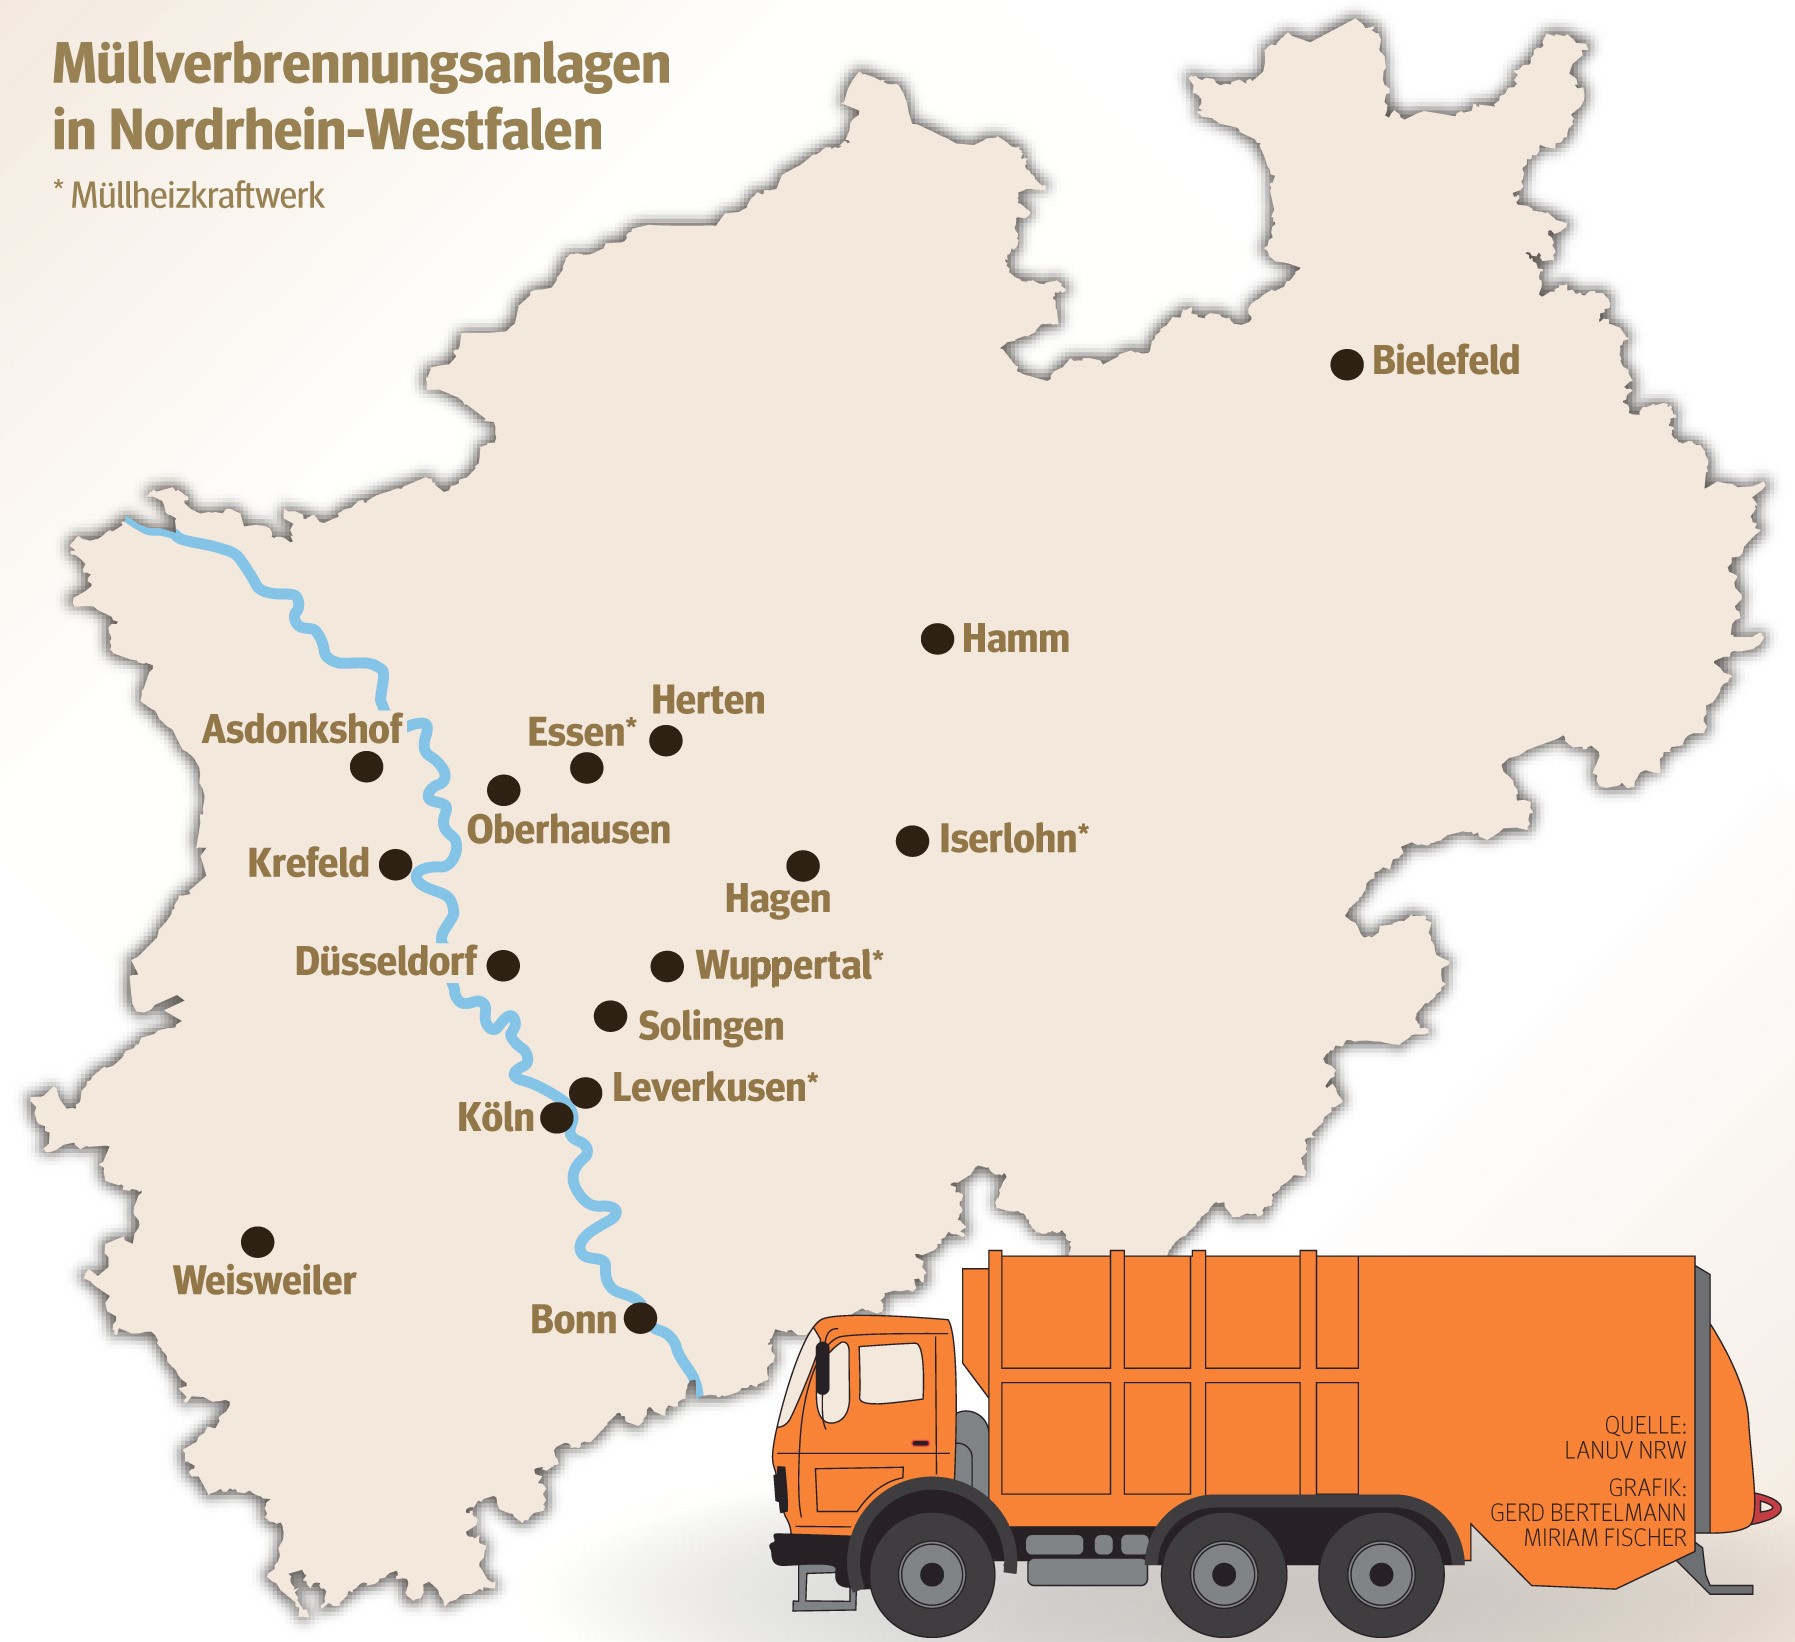 Müllverbrennungsanlagen in NRW